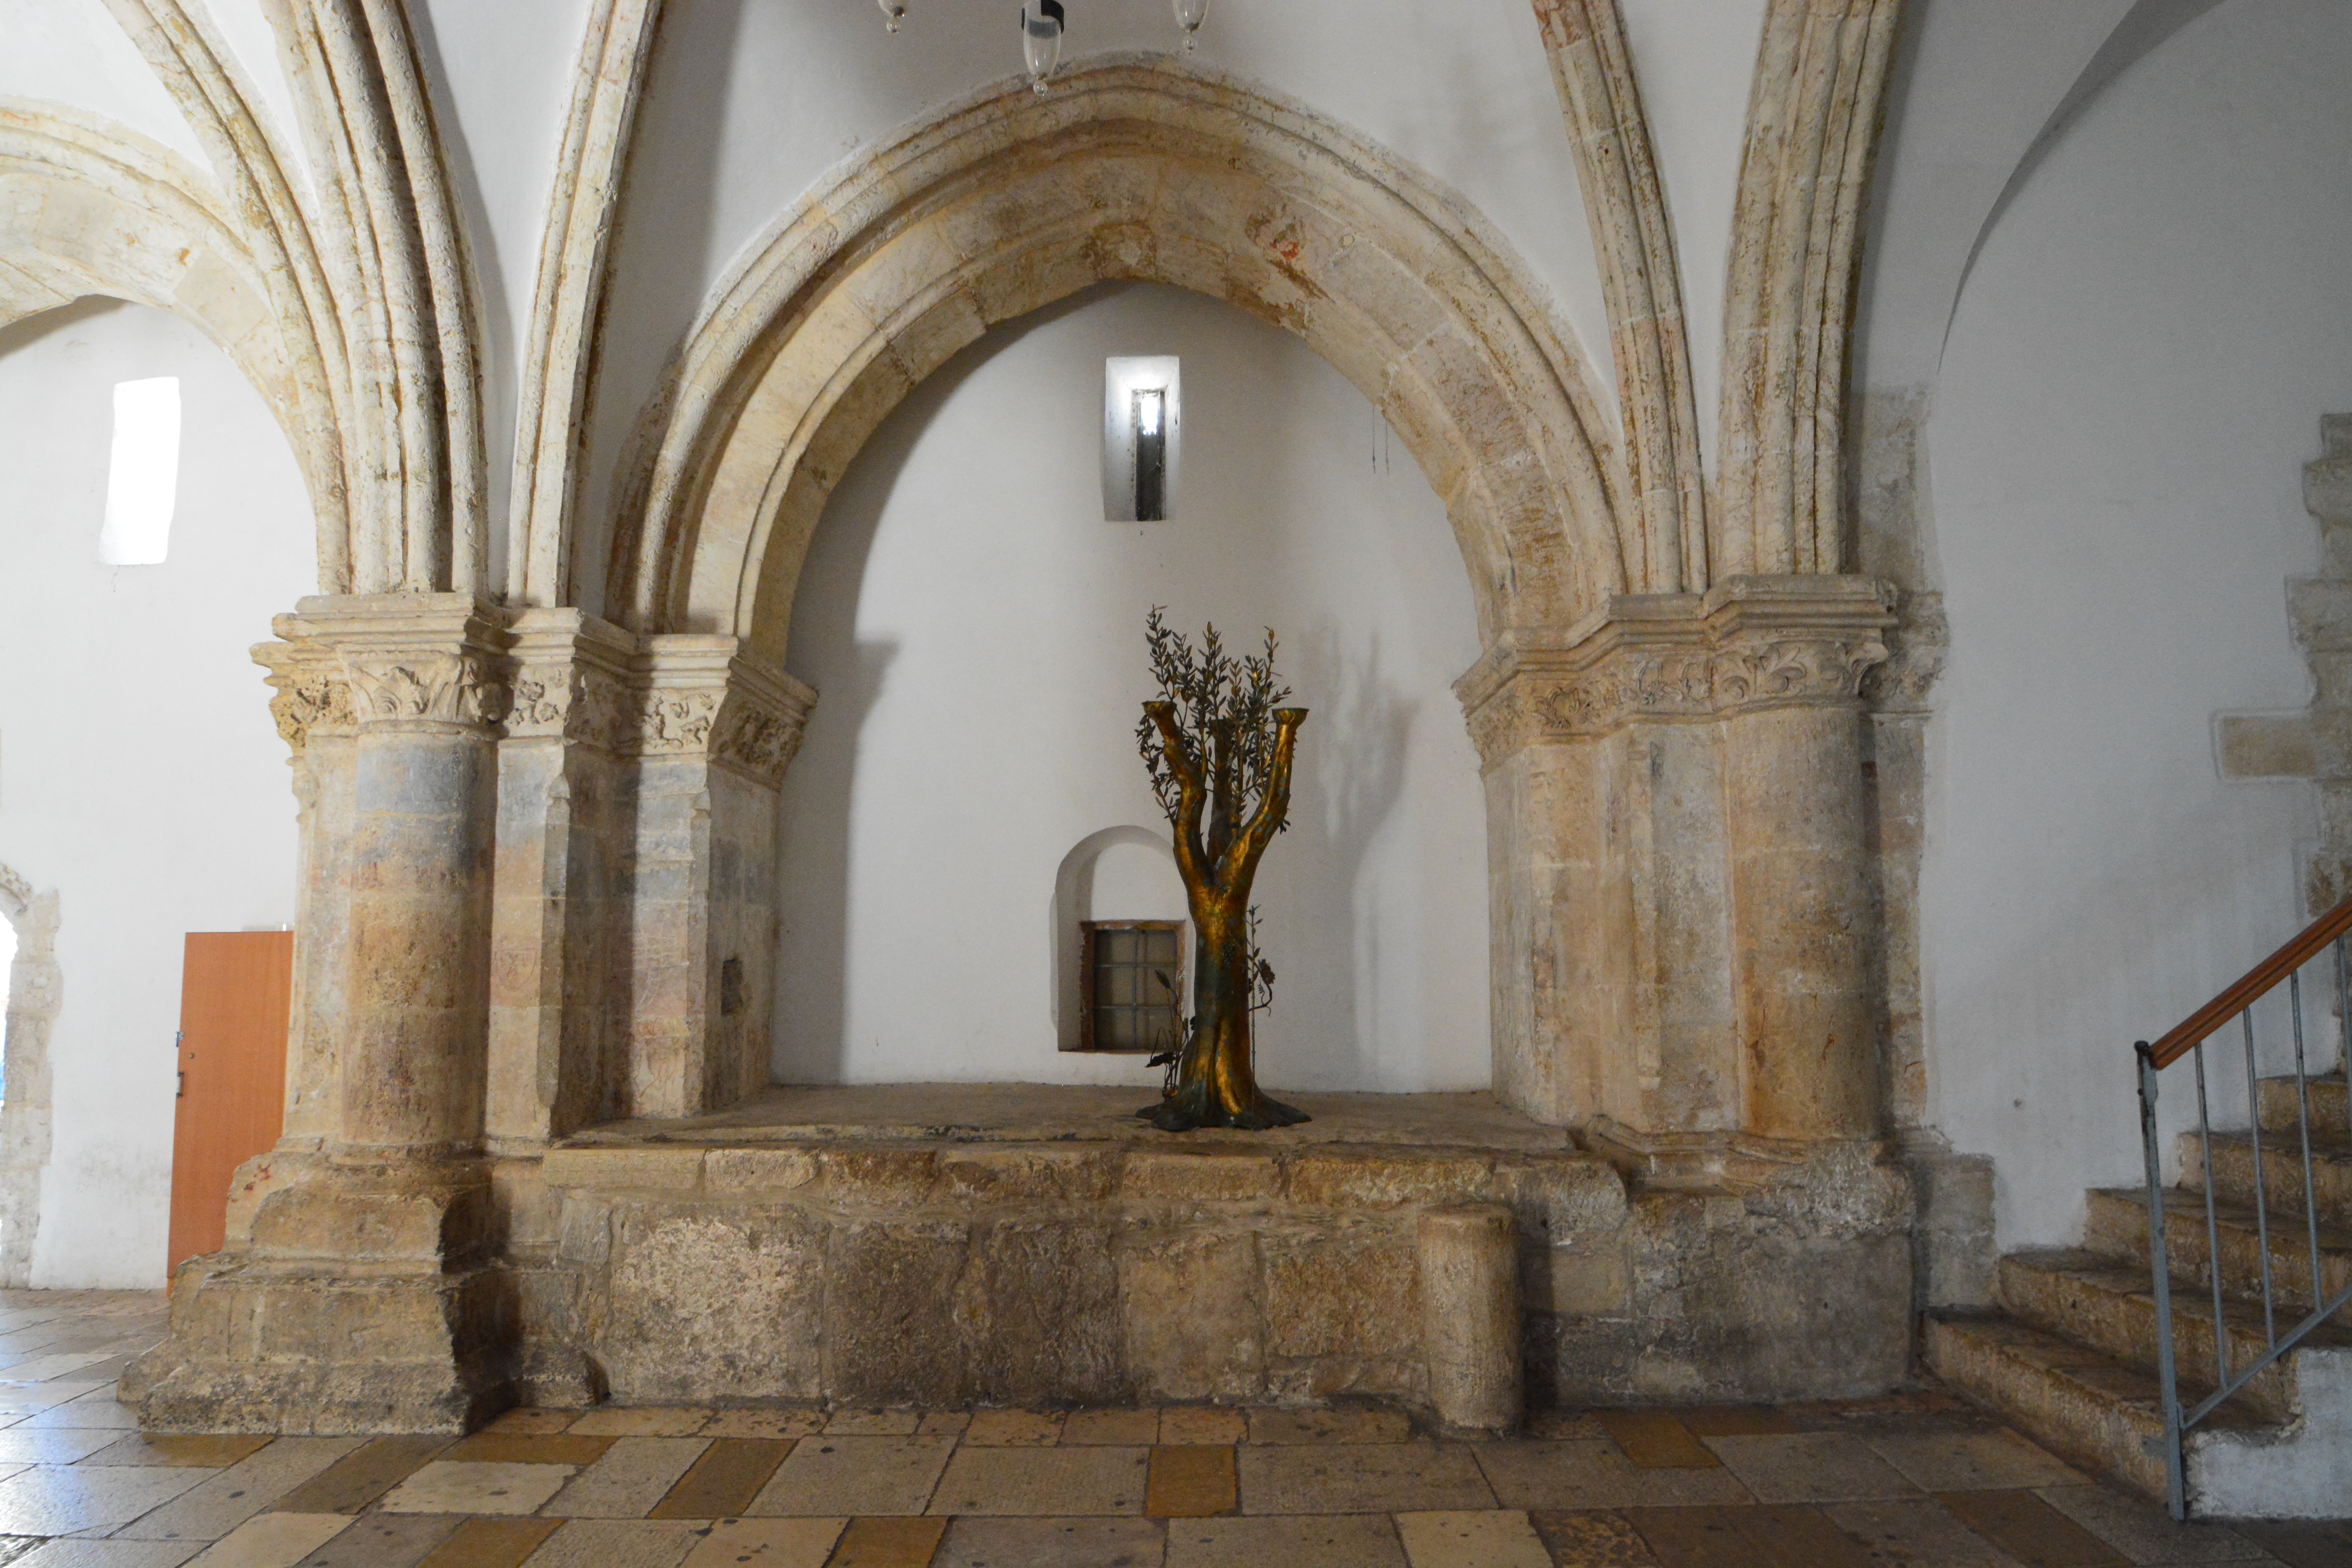 空房間中間的橄欖樹象徵基督教是從猶太教發芽出的枝子。（約阿咪提供）